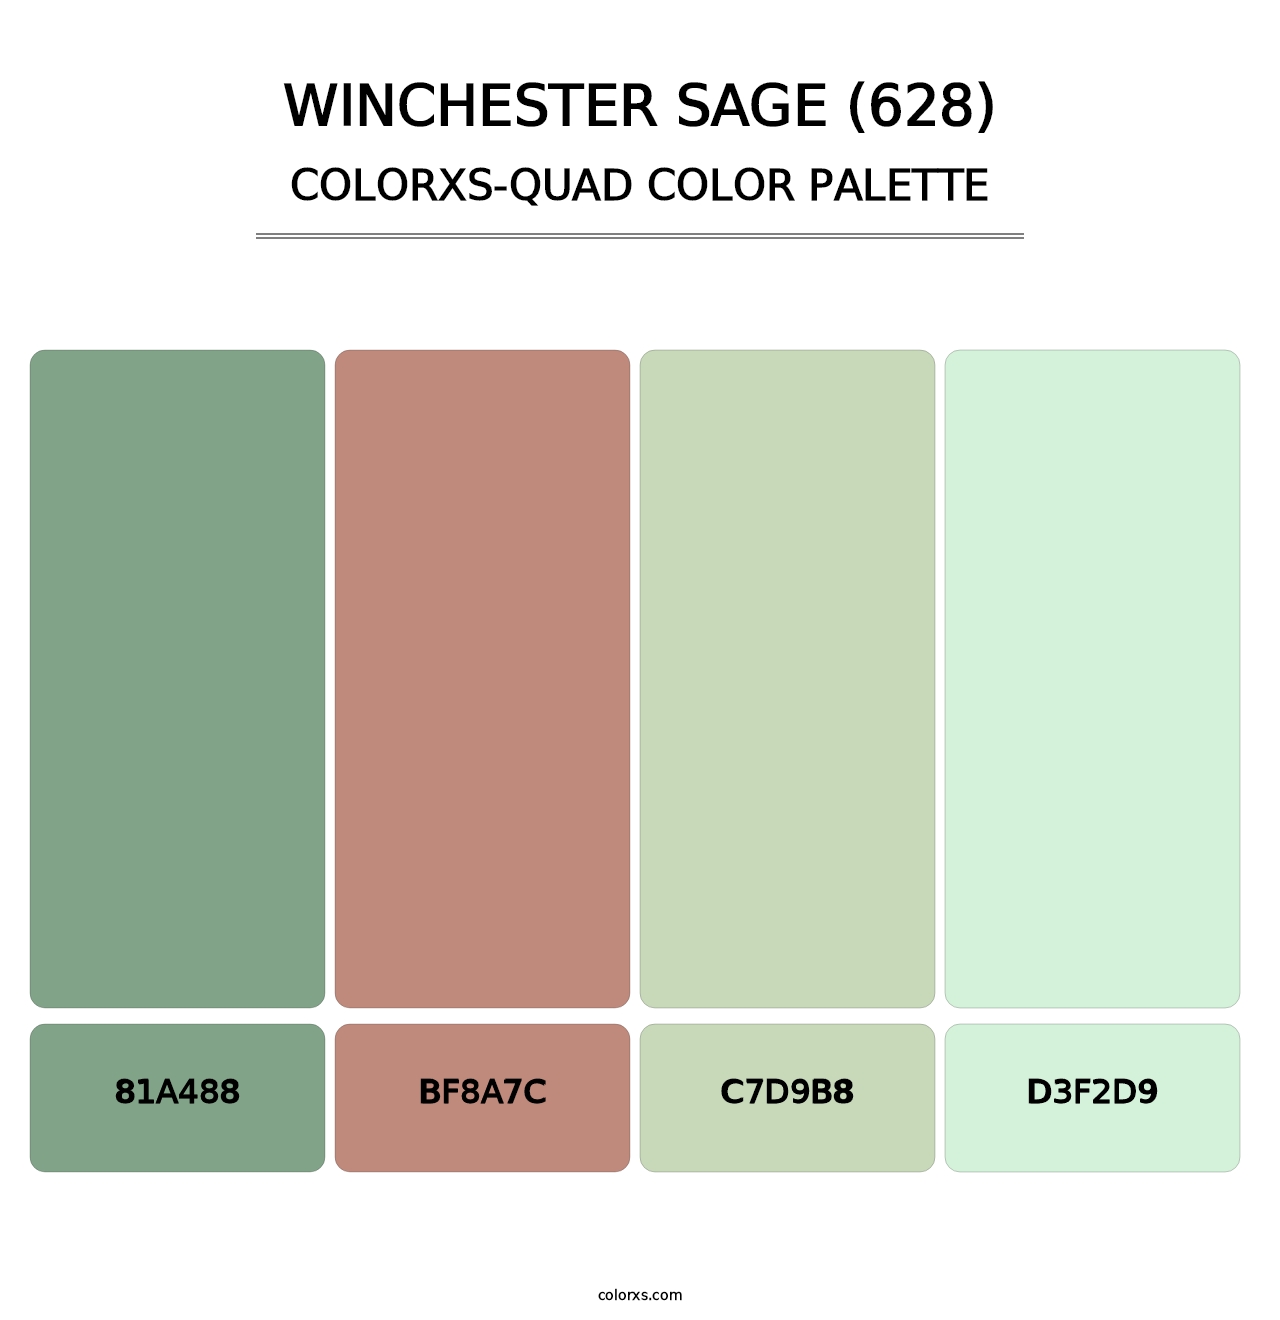 Winchester Sage (628) - Colorxs Quad Palette